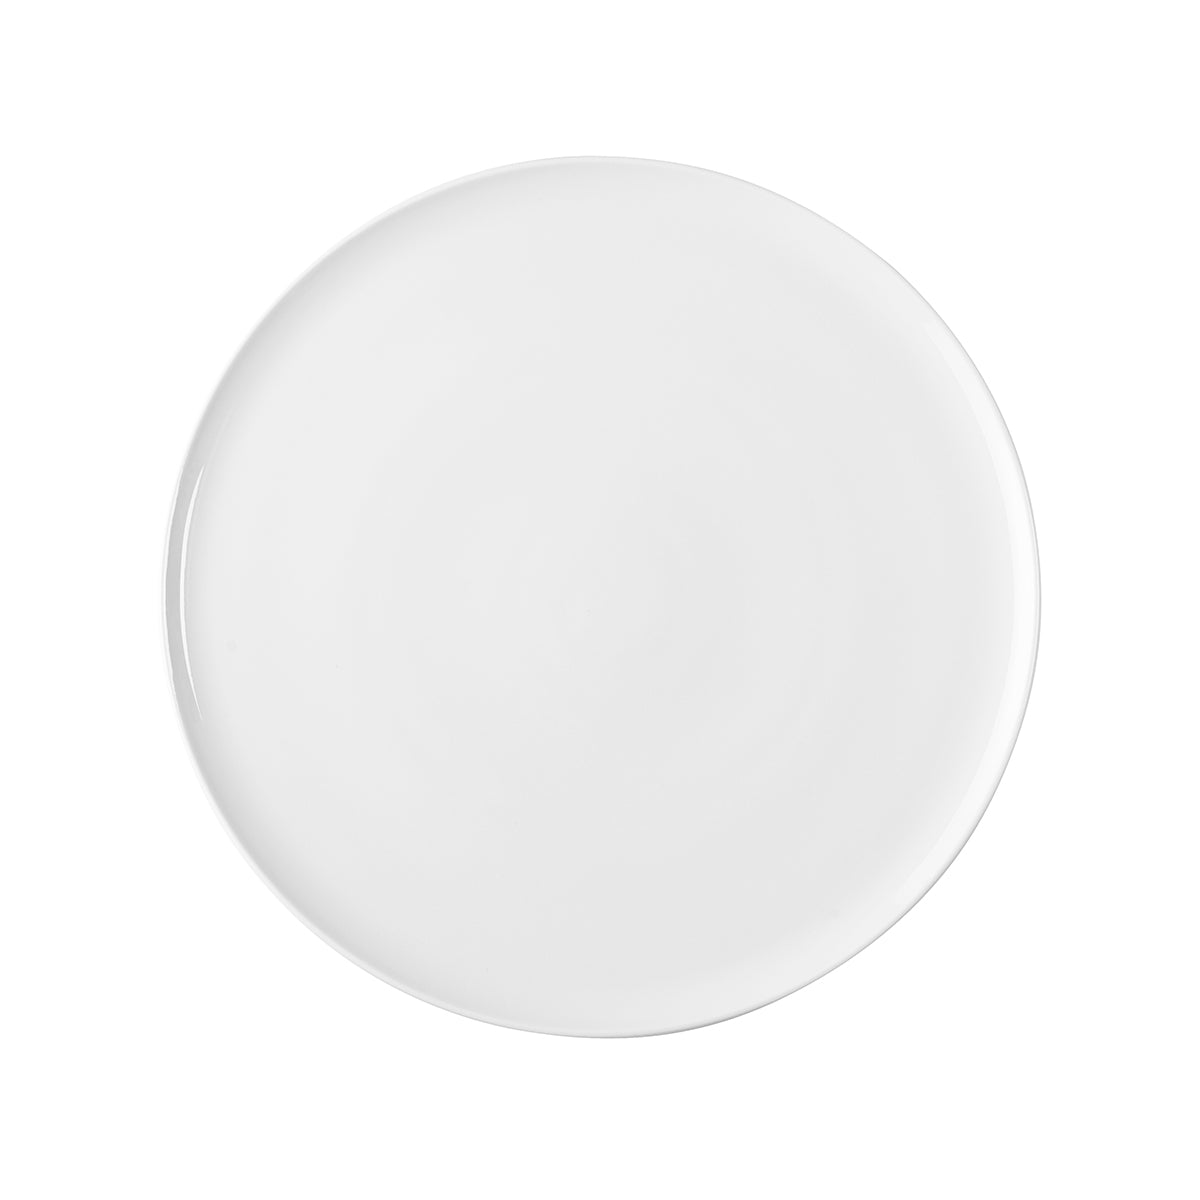 MODULO WHITE Pie dish 32 cm – DEGRENNE